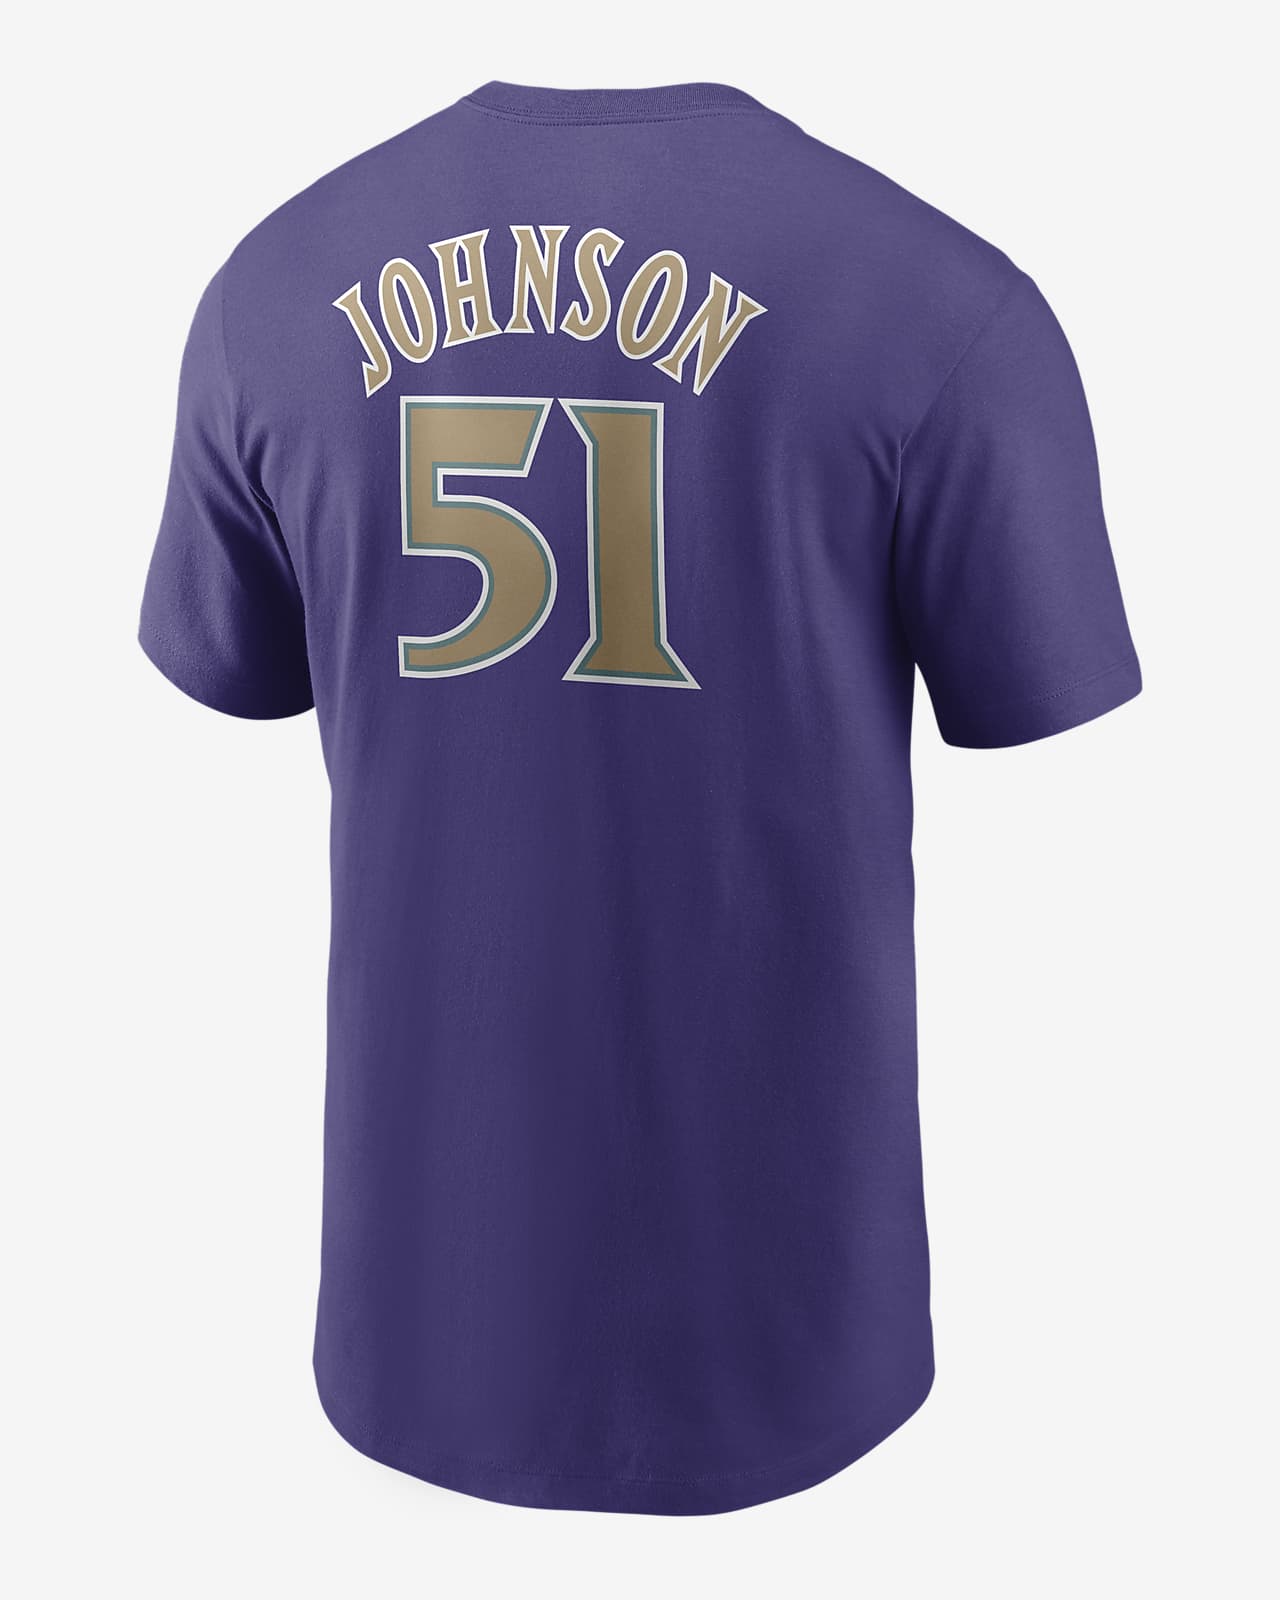 MLB Arizona Diamondbacks (Randy Johnson) Men's T-Shirt.